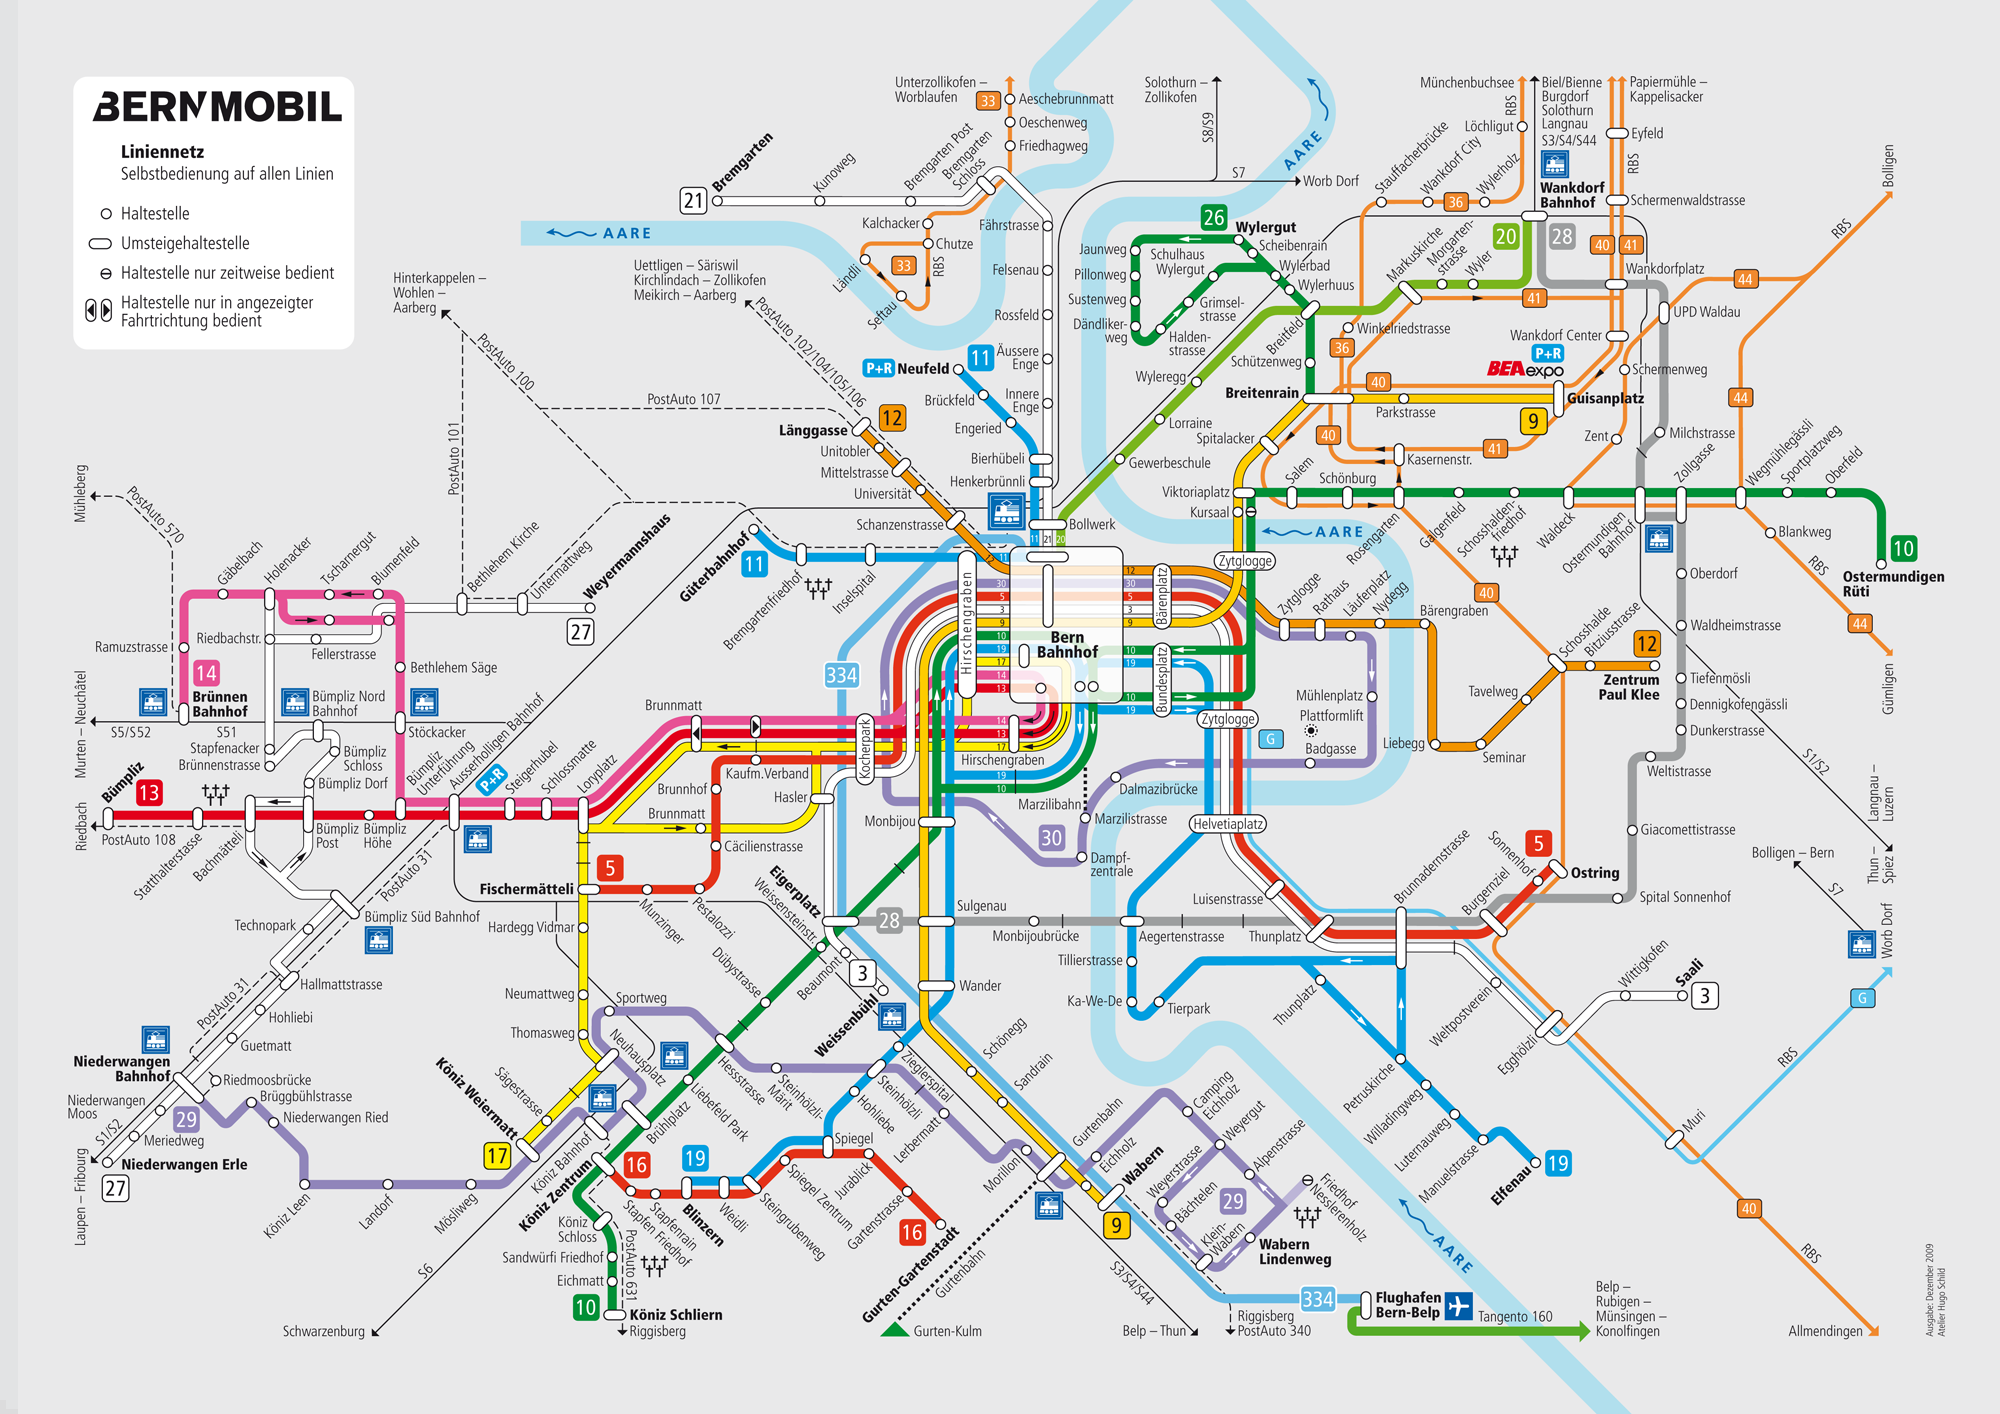 Карта маршрутов общественного транспорта спб